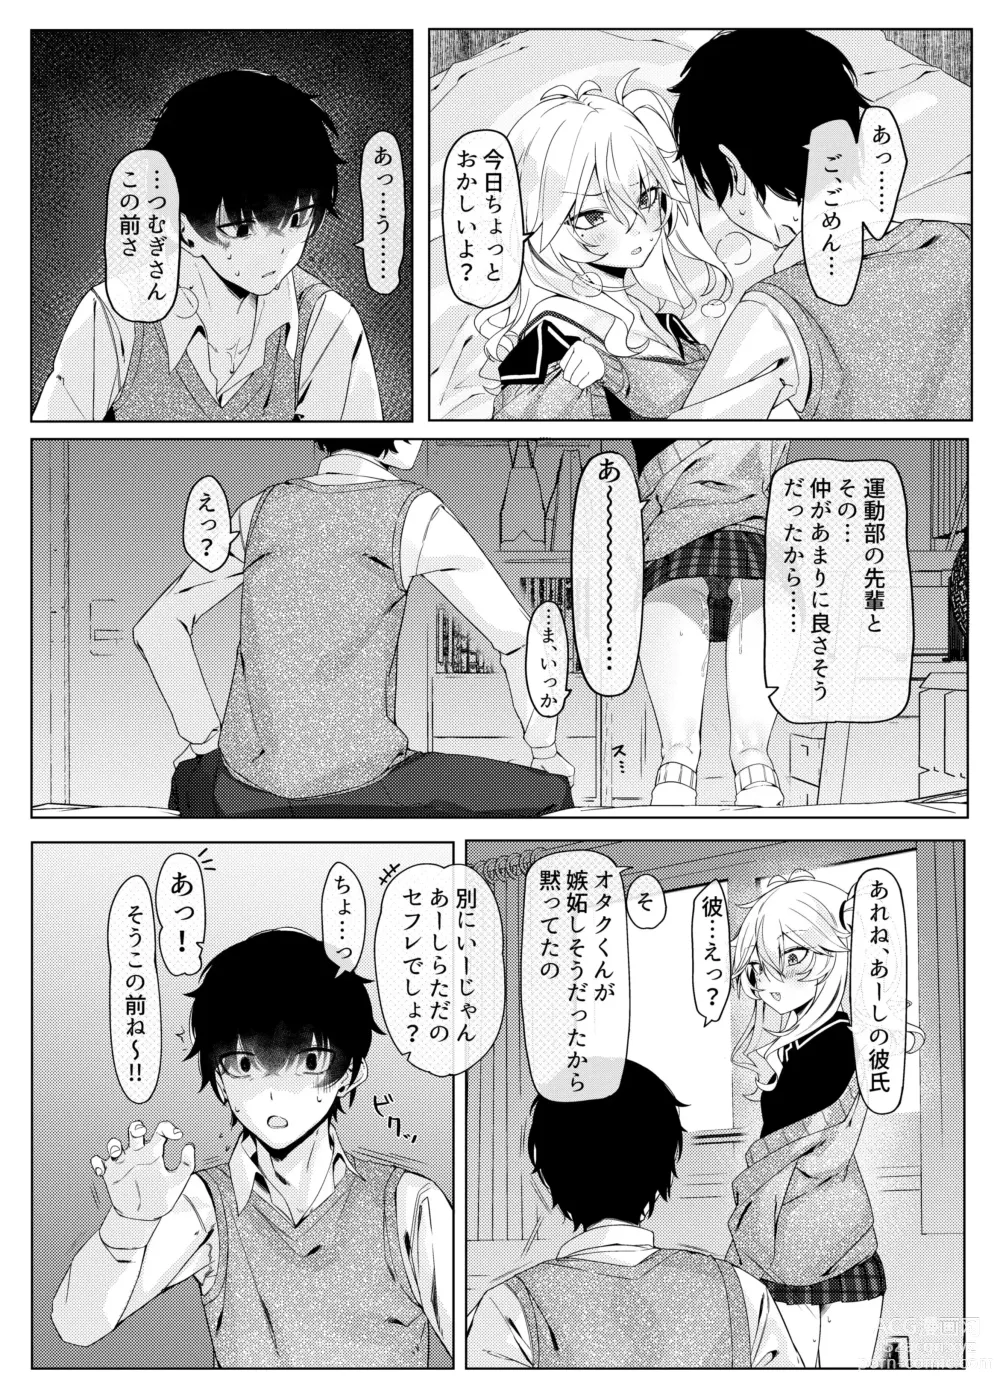 Page 6 of doujinshi Kanojo wa dare ka no ude no naka